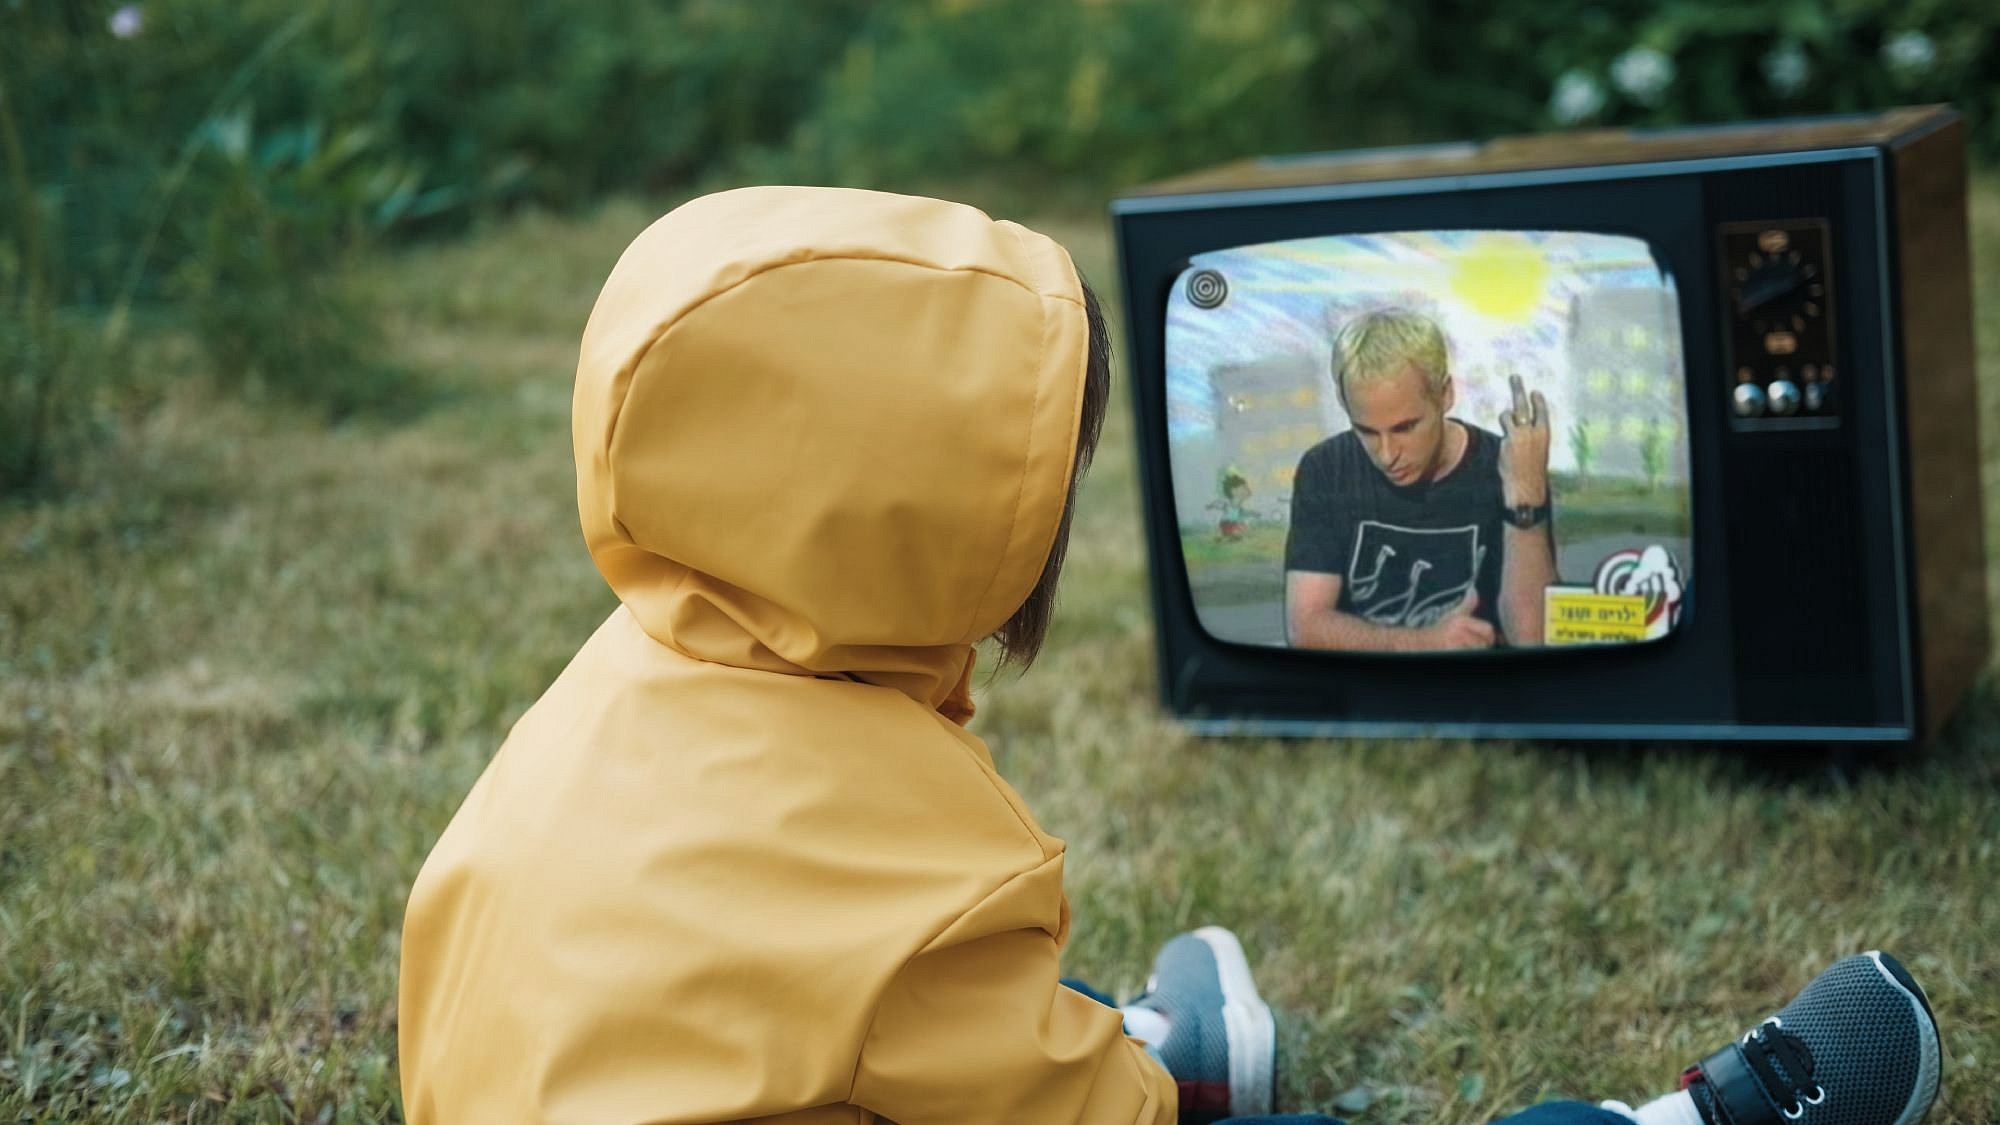 דברים שלא ידענו שמסוכנים בניינטיז. ילד צופה בגדי טאוב מנחה את זאפ לראשון. צילום: Shutterstock, צילום מסך